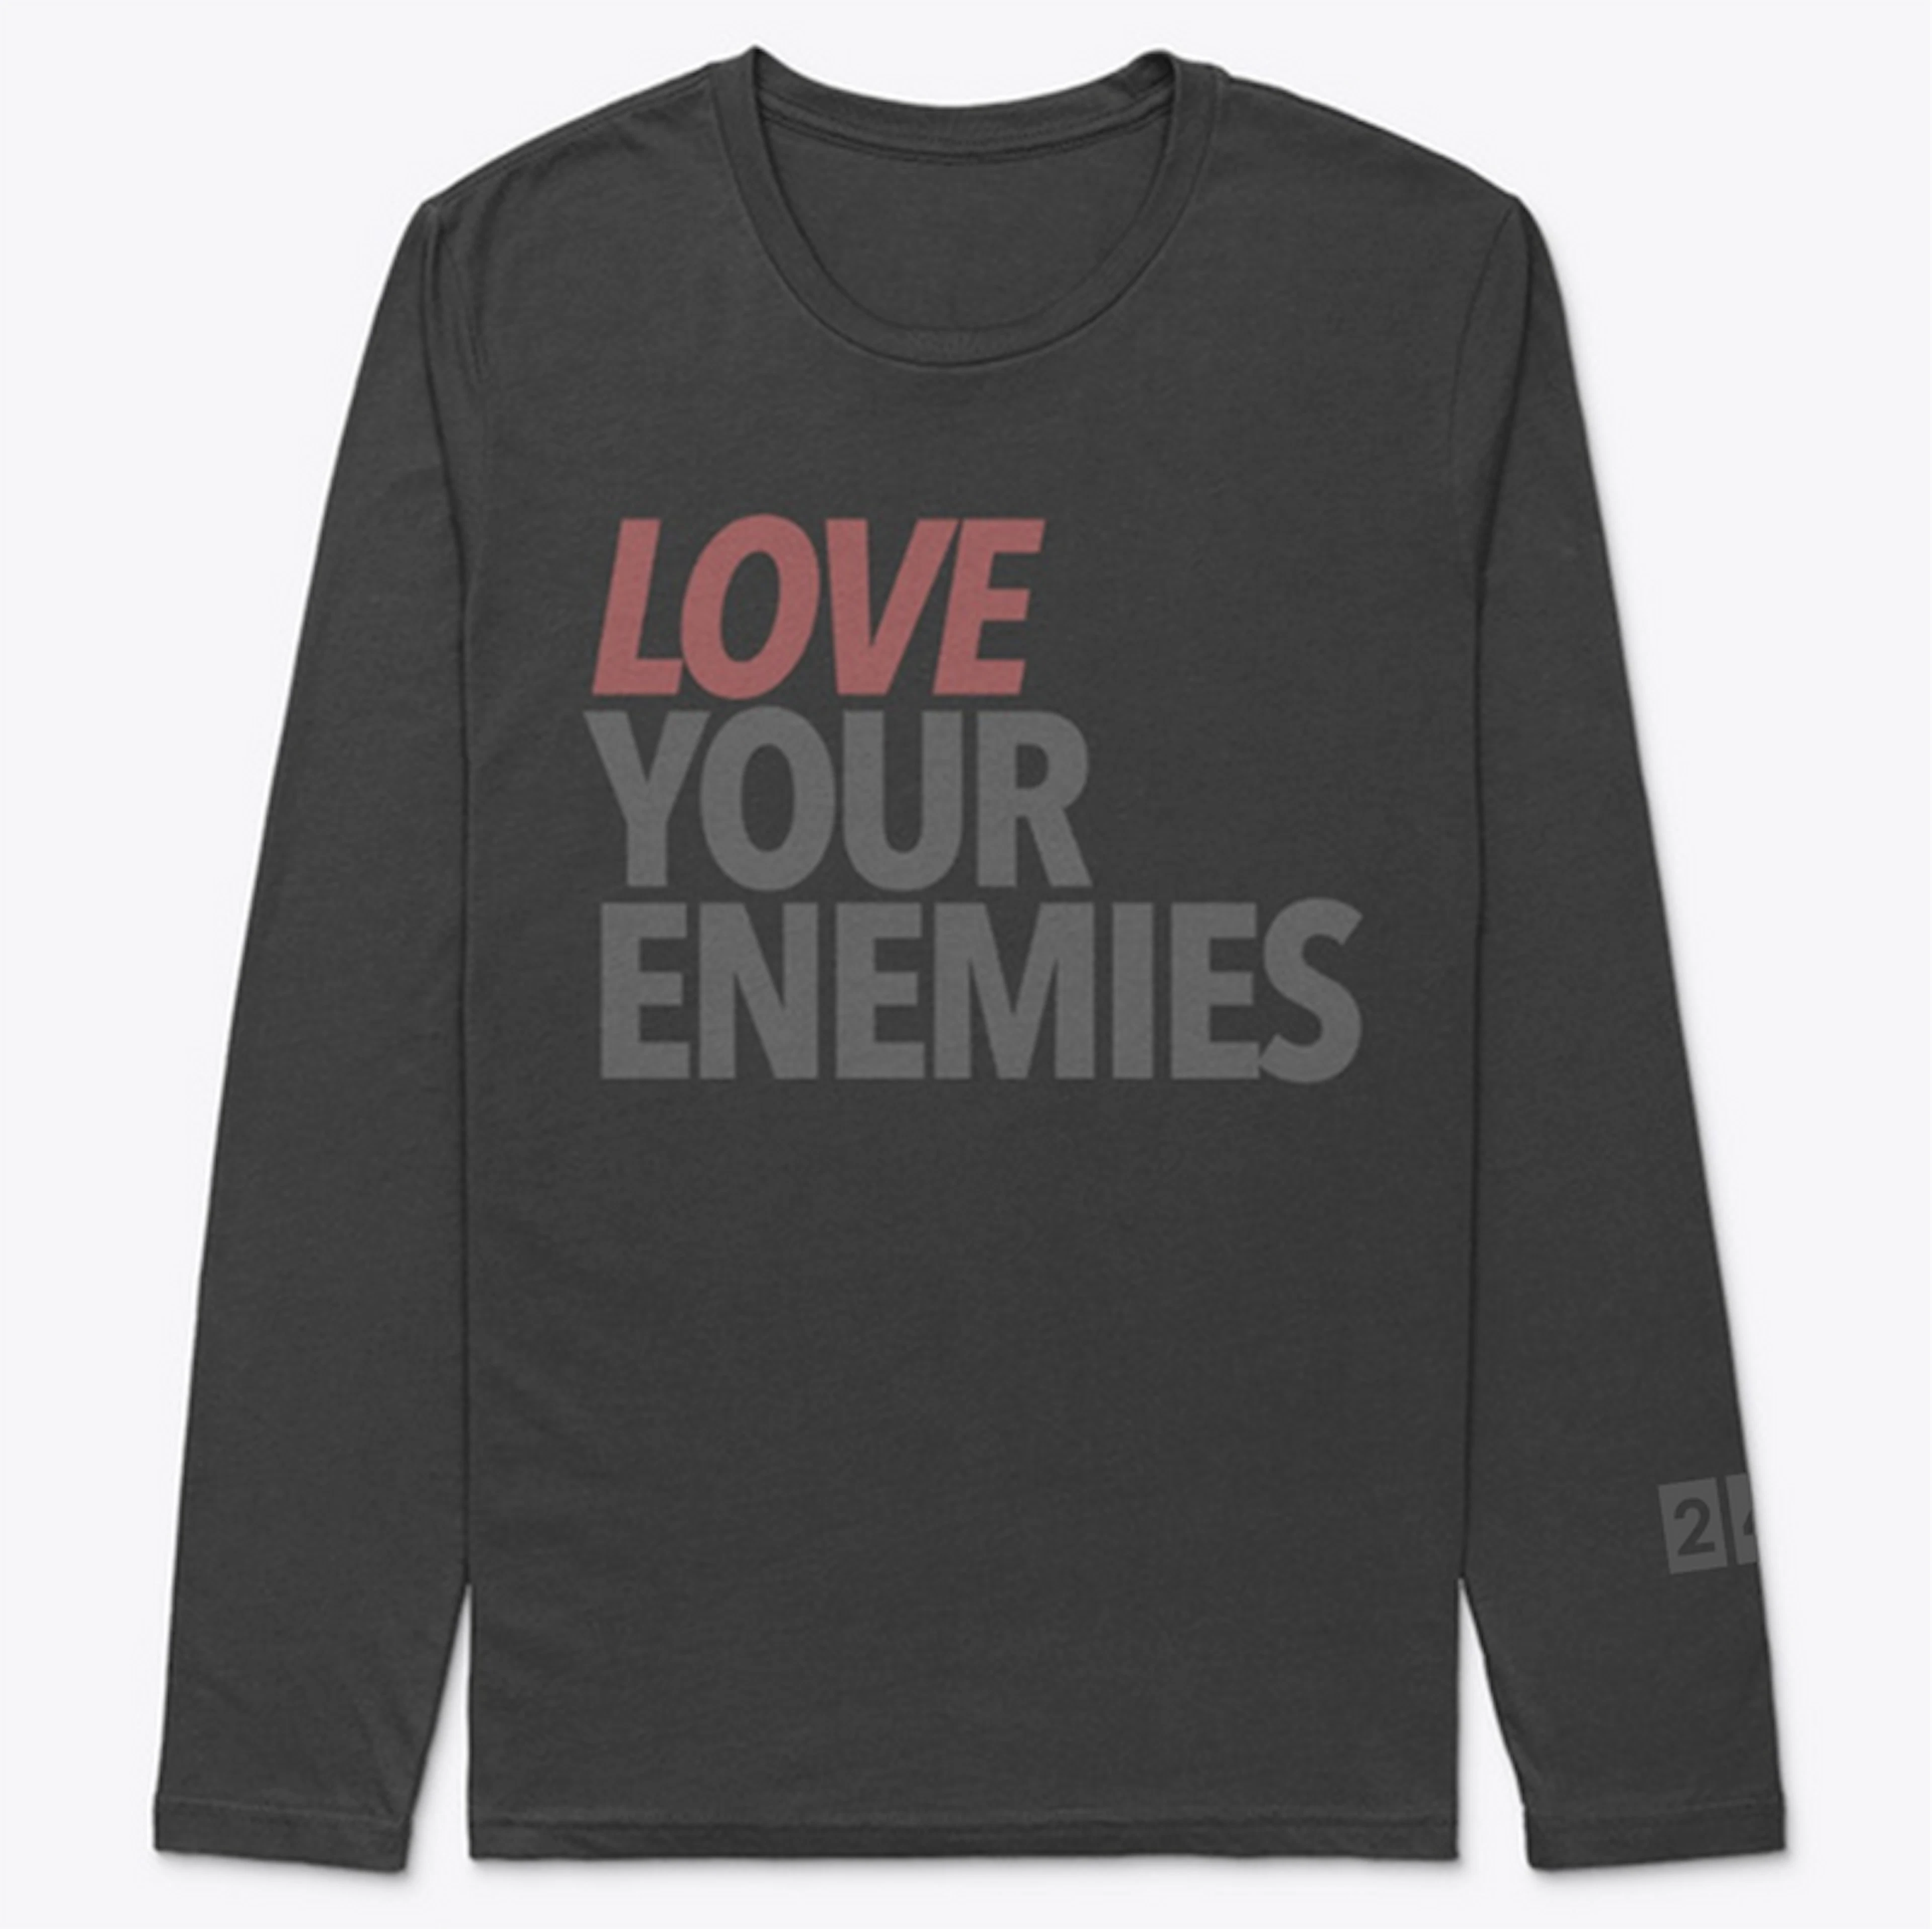 Love Your Enemies - Long Sleeve